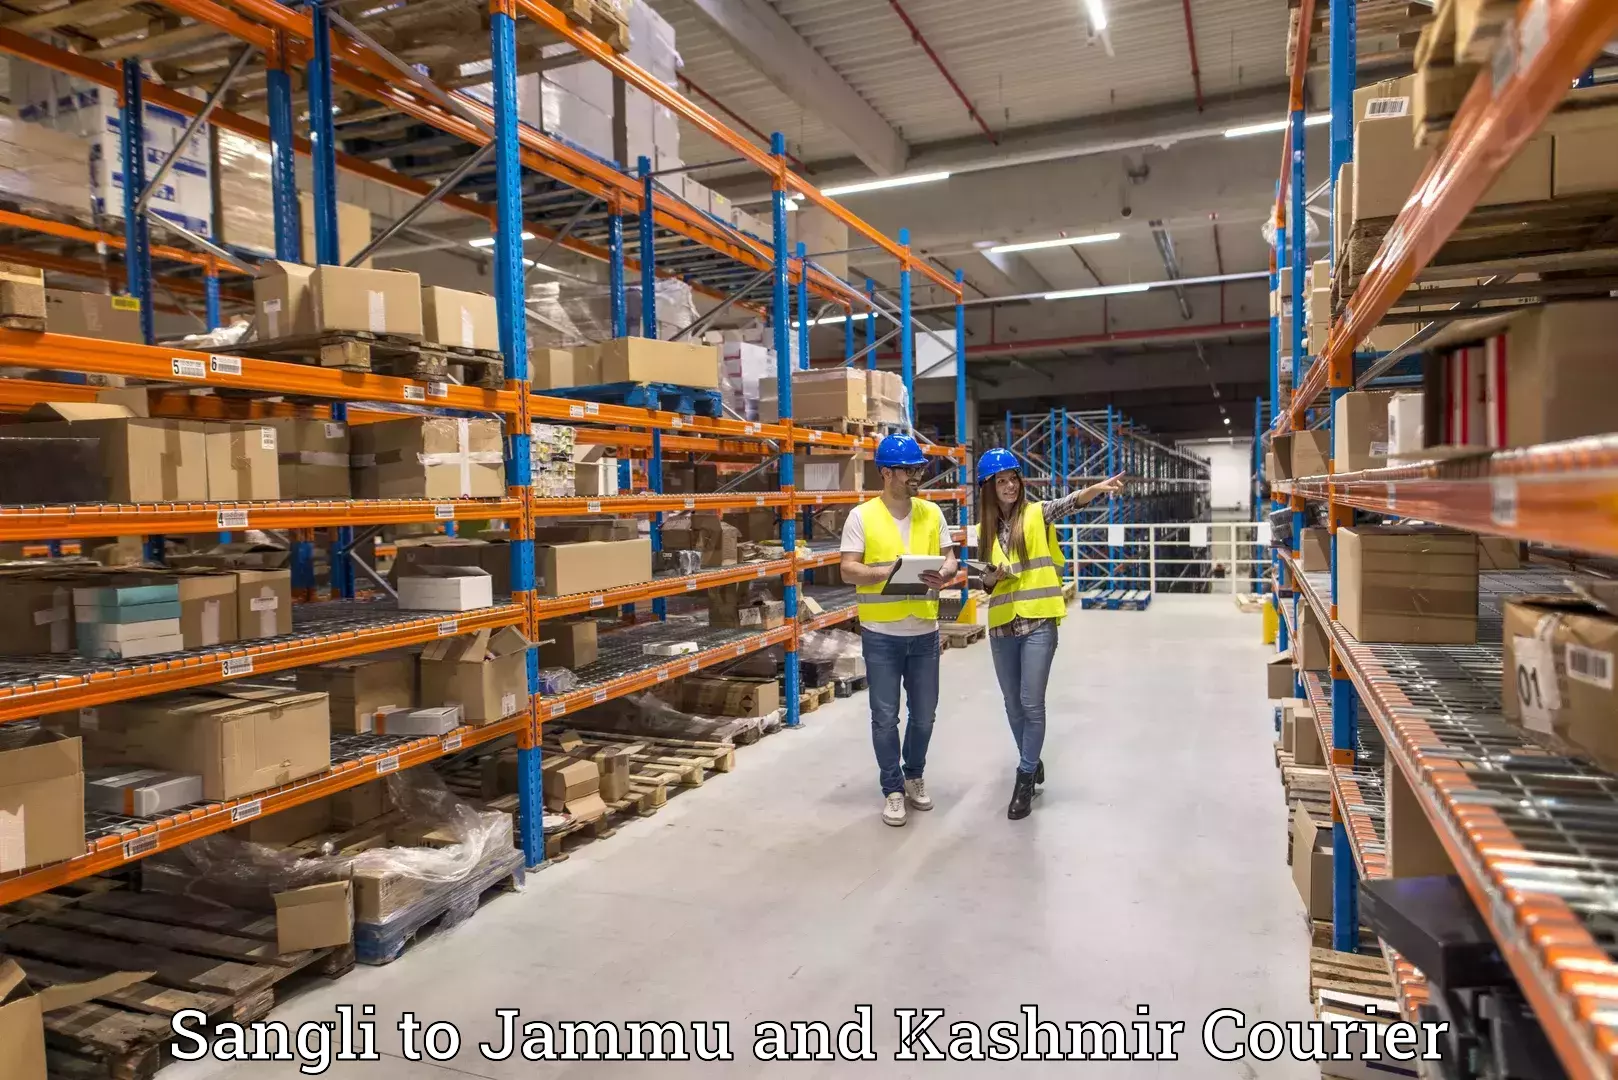 Global shipping networks Sangli to Jammu and Kashmir